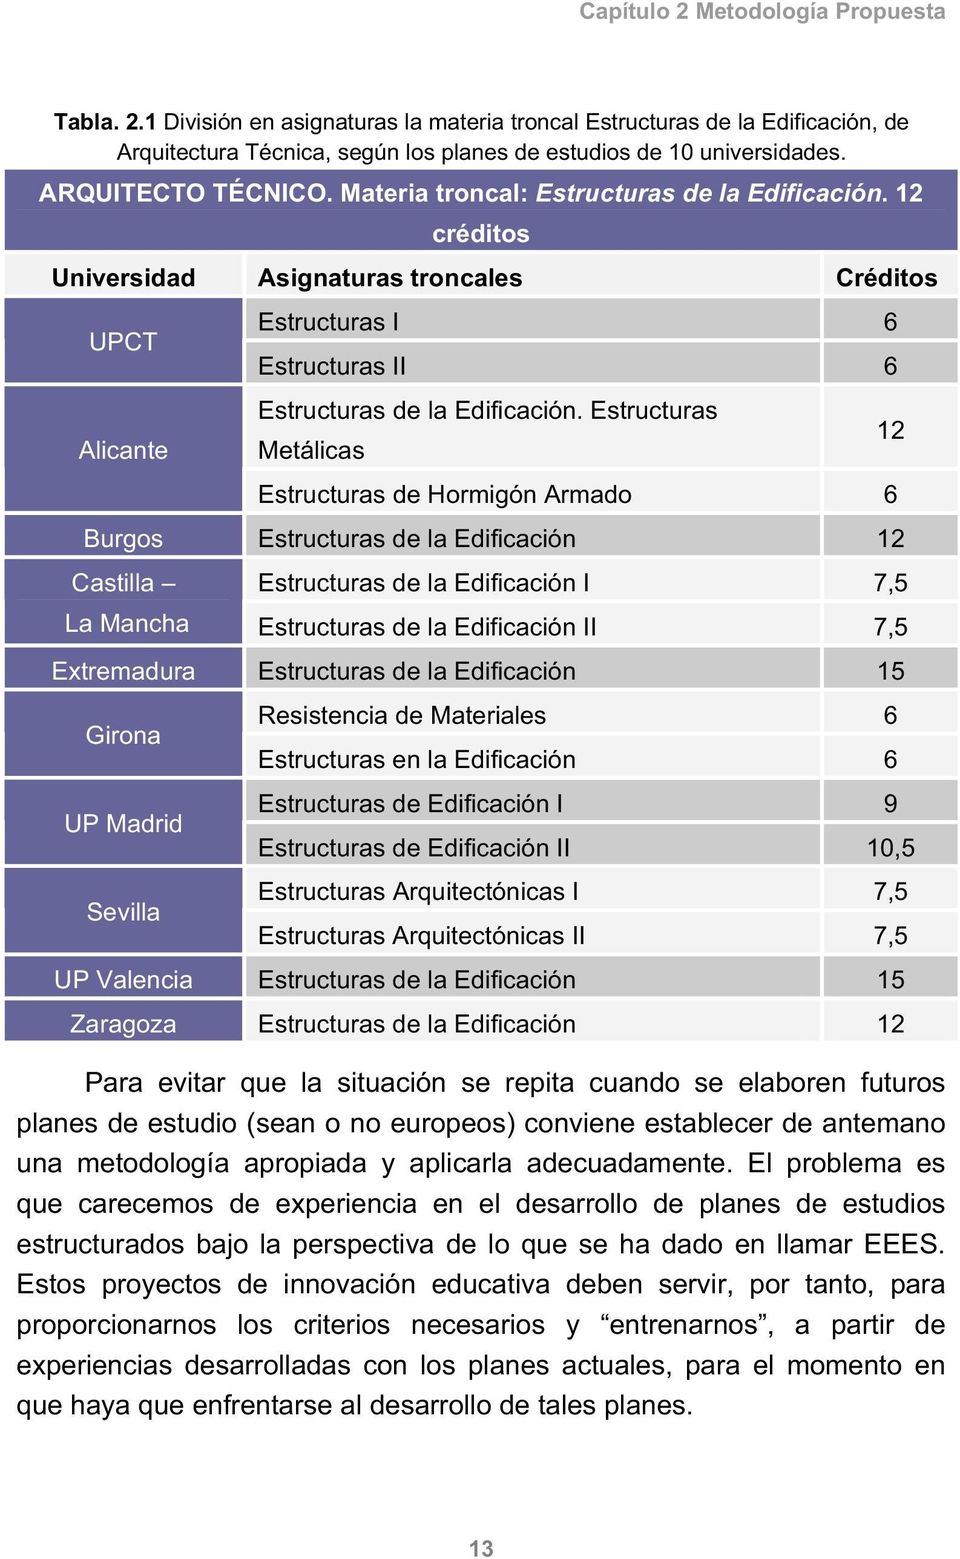 Estructuras Metálicas 12 Estructuras de Hormigón Armado 6 Burgos Estructuras de la Edificación 12 Castilla Estructuras de la Edificación I 7,5 La Mancha Estructuras de la Edificación II 7,5